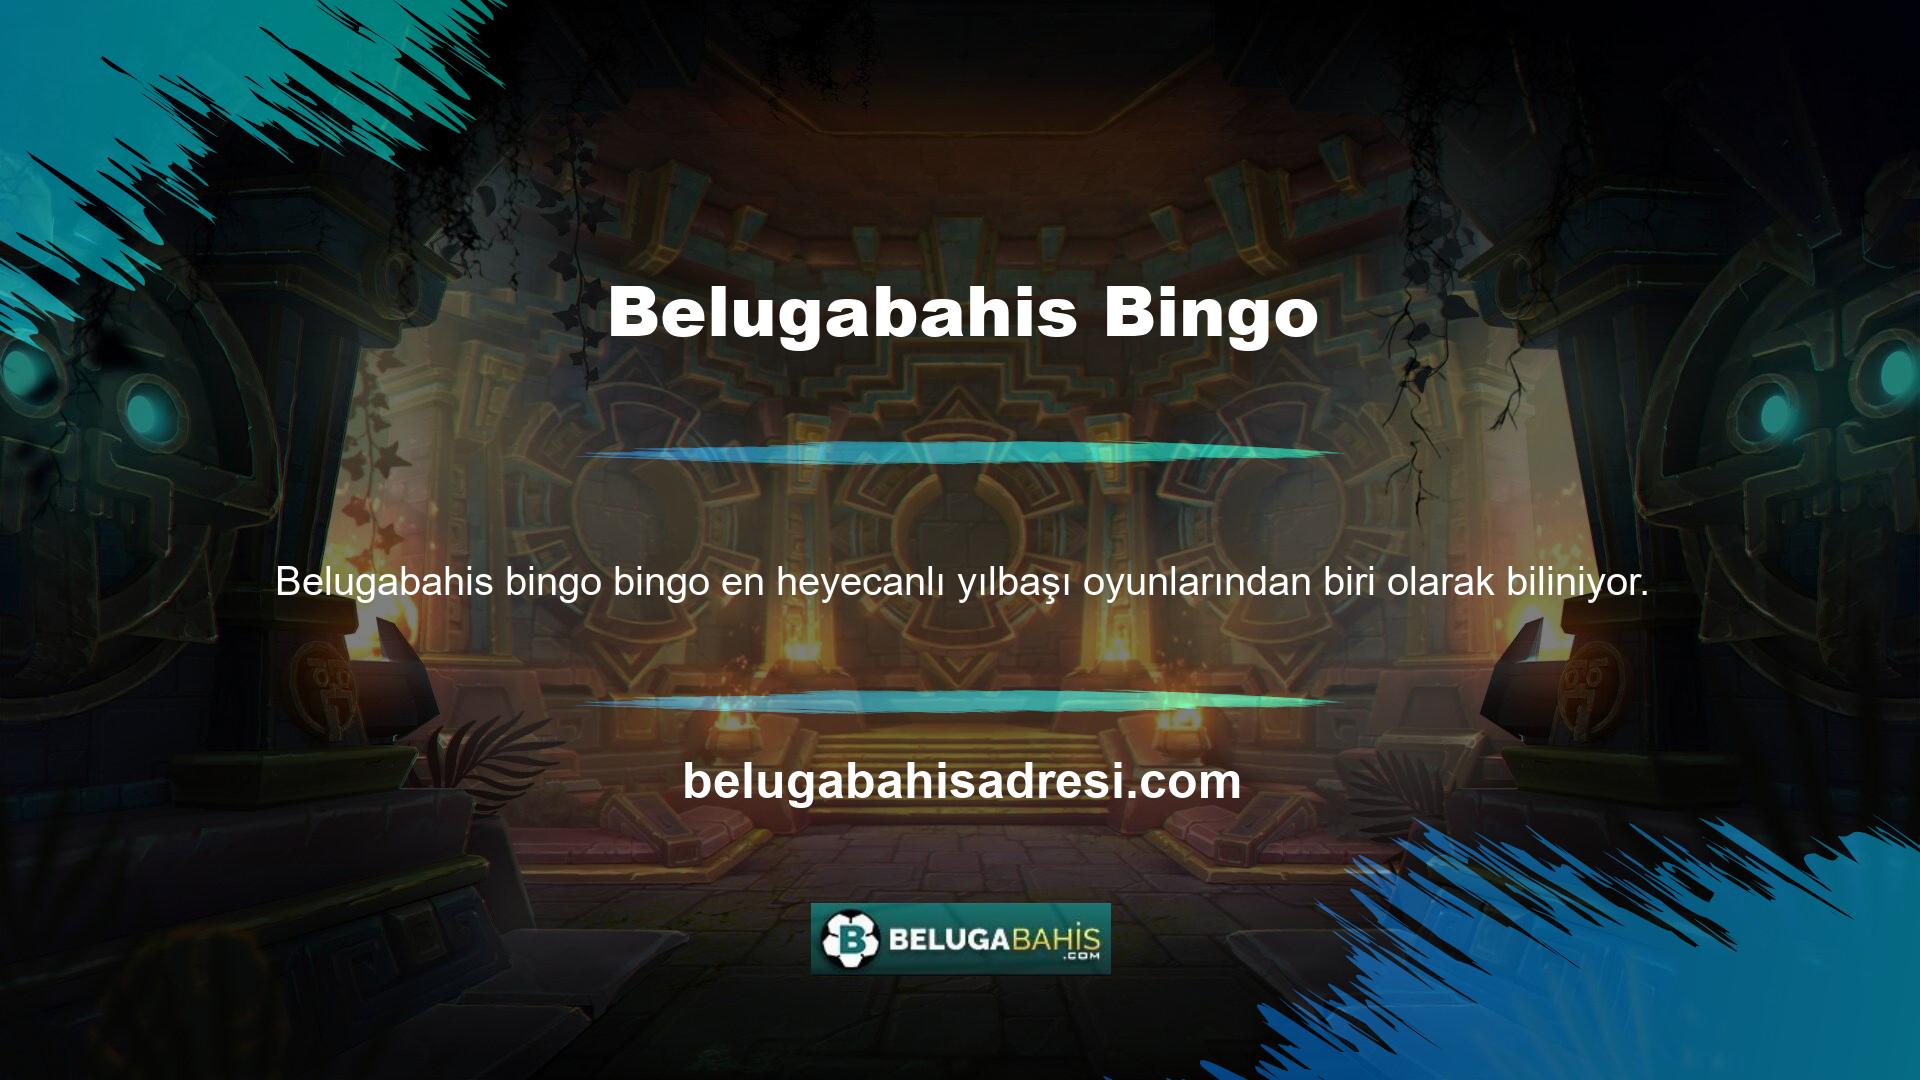 Belugabahis, üyelerine her biri kalitesiyle öne çıkan çeşitli bingo seçenekleri sunmaktadır